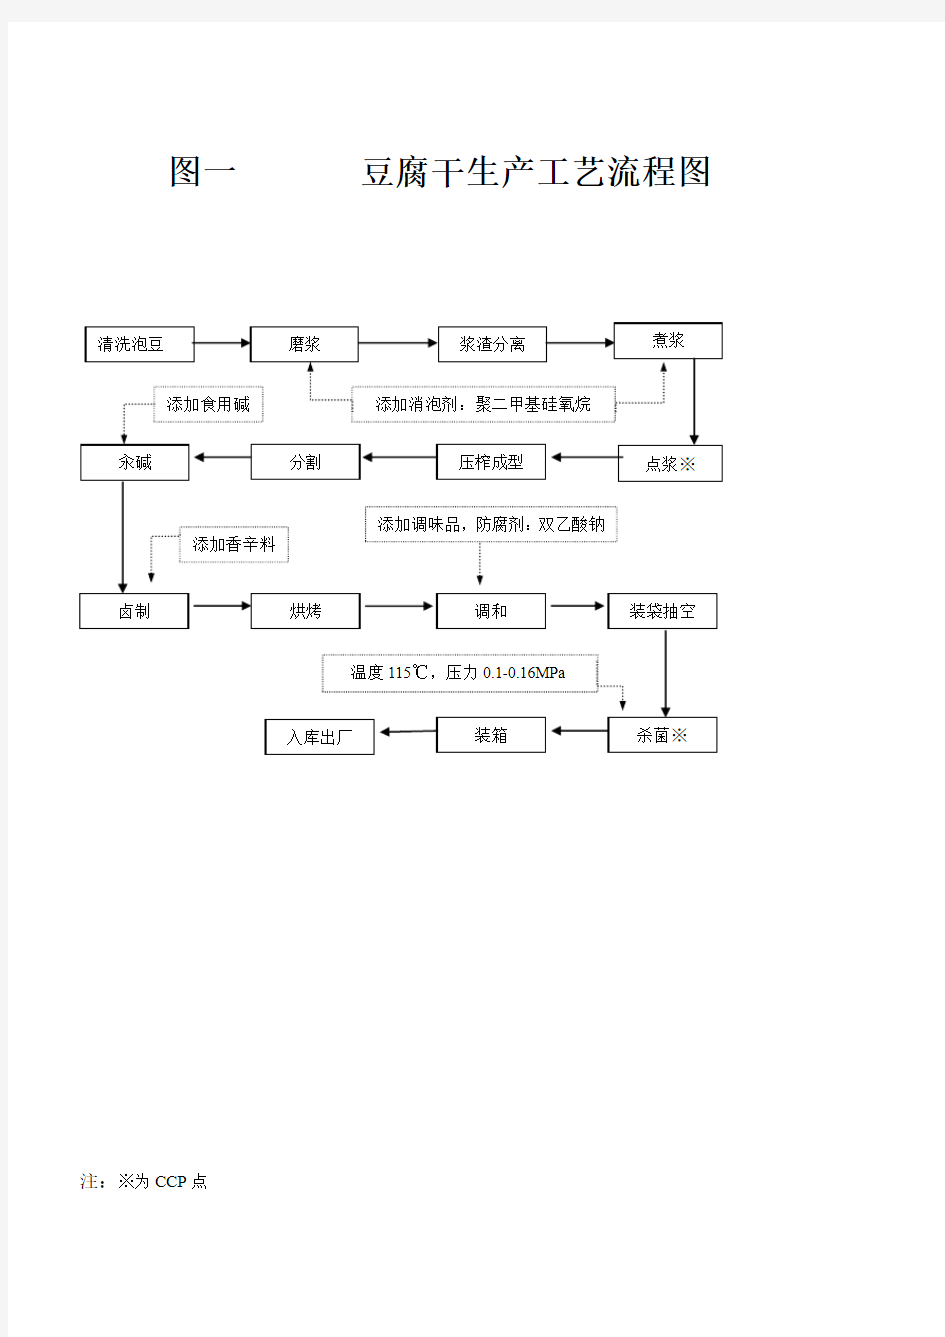 豆腐干生产工艺流程图